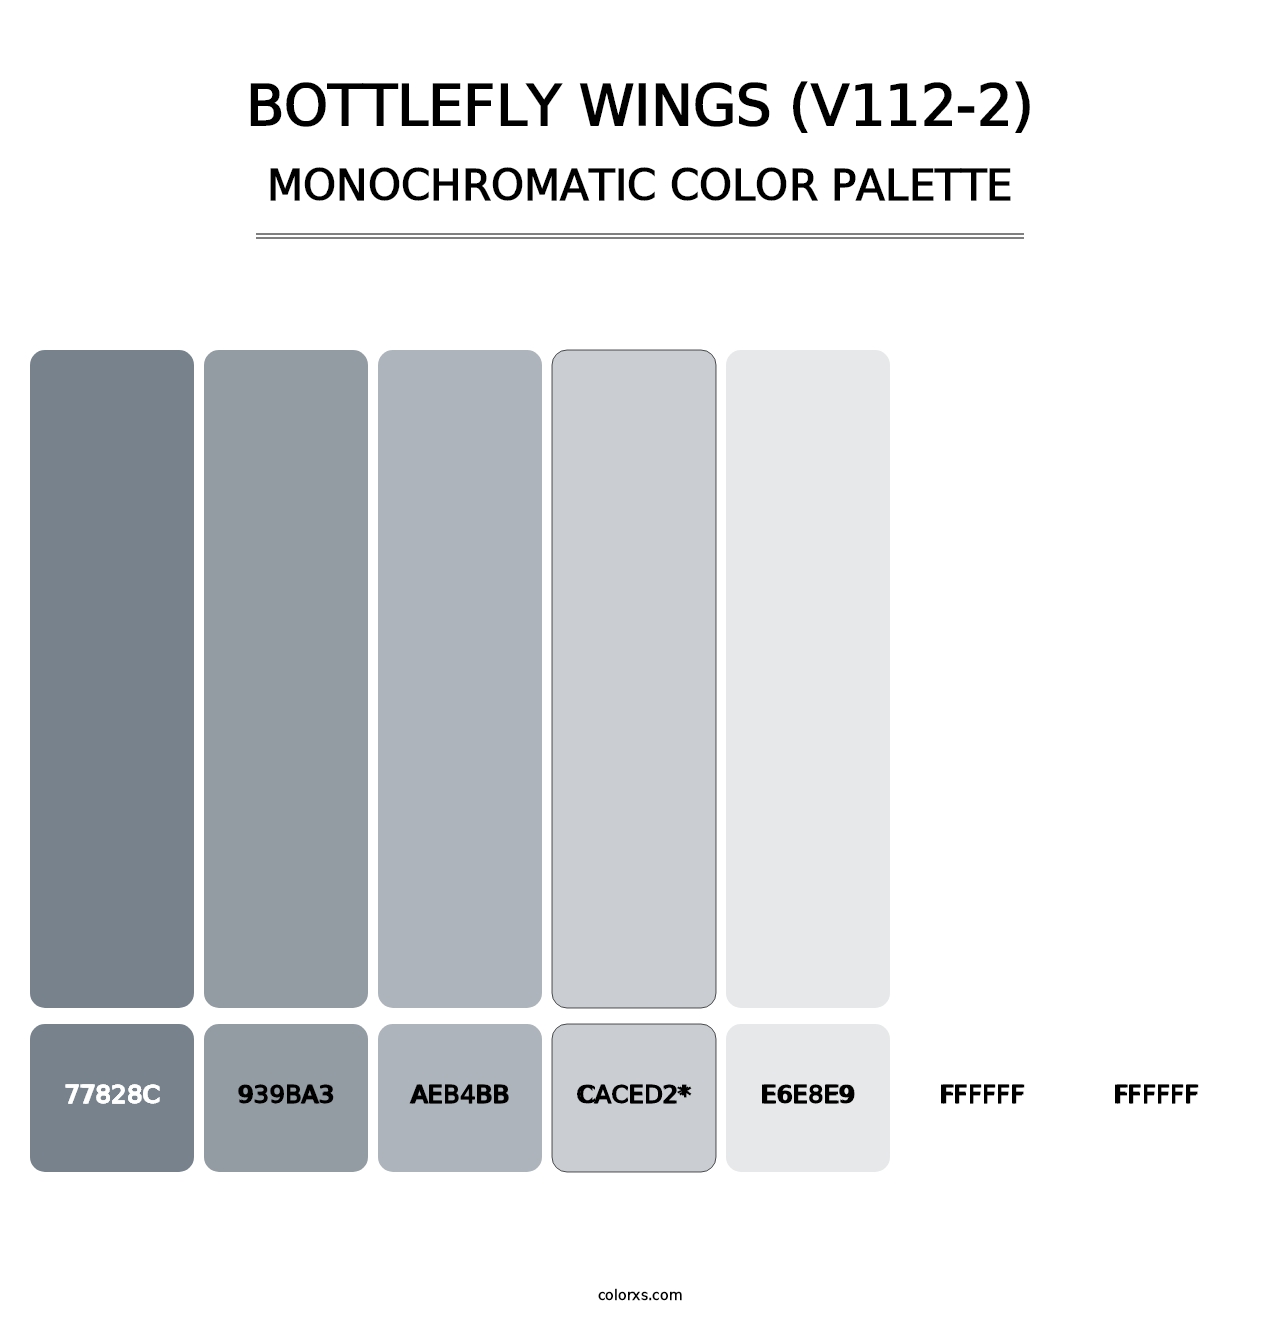 Bottlefly Wings (V112-2) - Monochromatic Color Palette